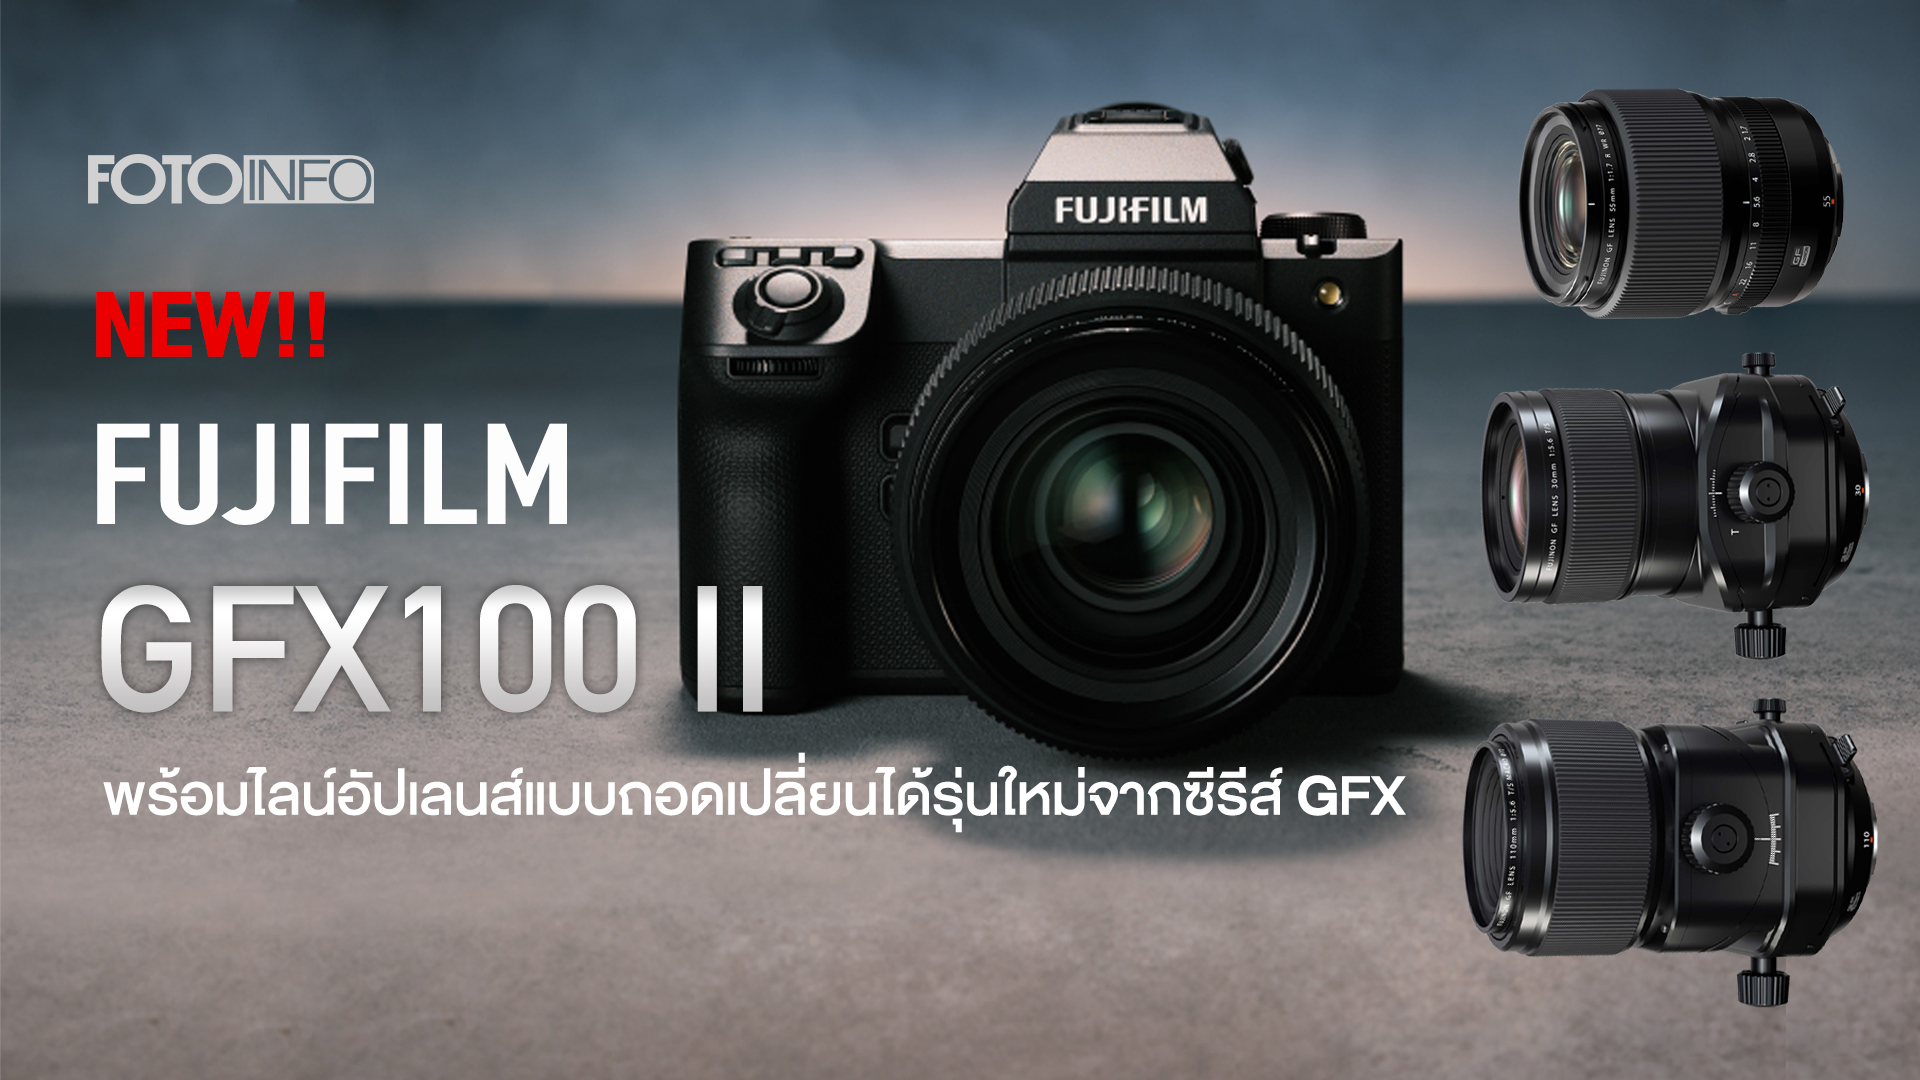 ฟูจิฟิล์ม เผยโฉมกล้องมีเดียมฟอร์แมต “FUJIFILM GFX100 II”